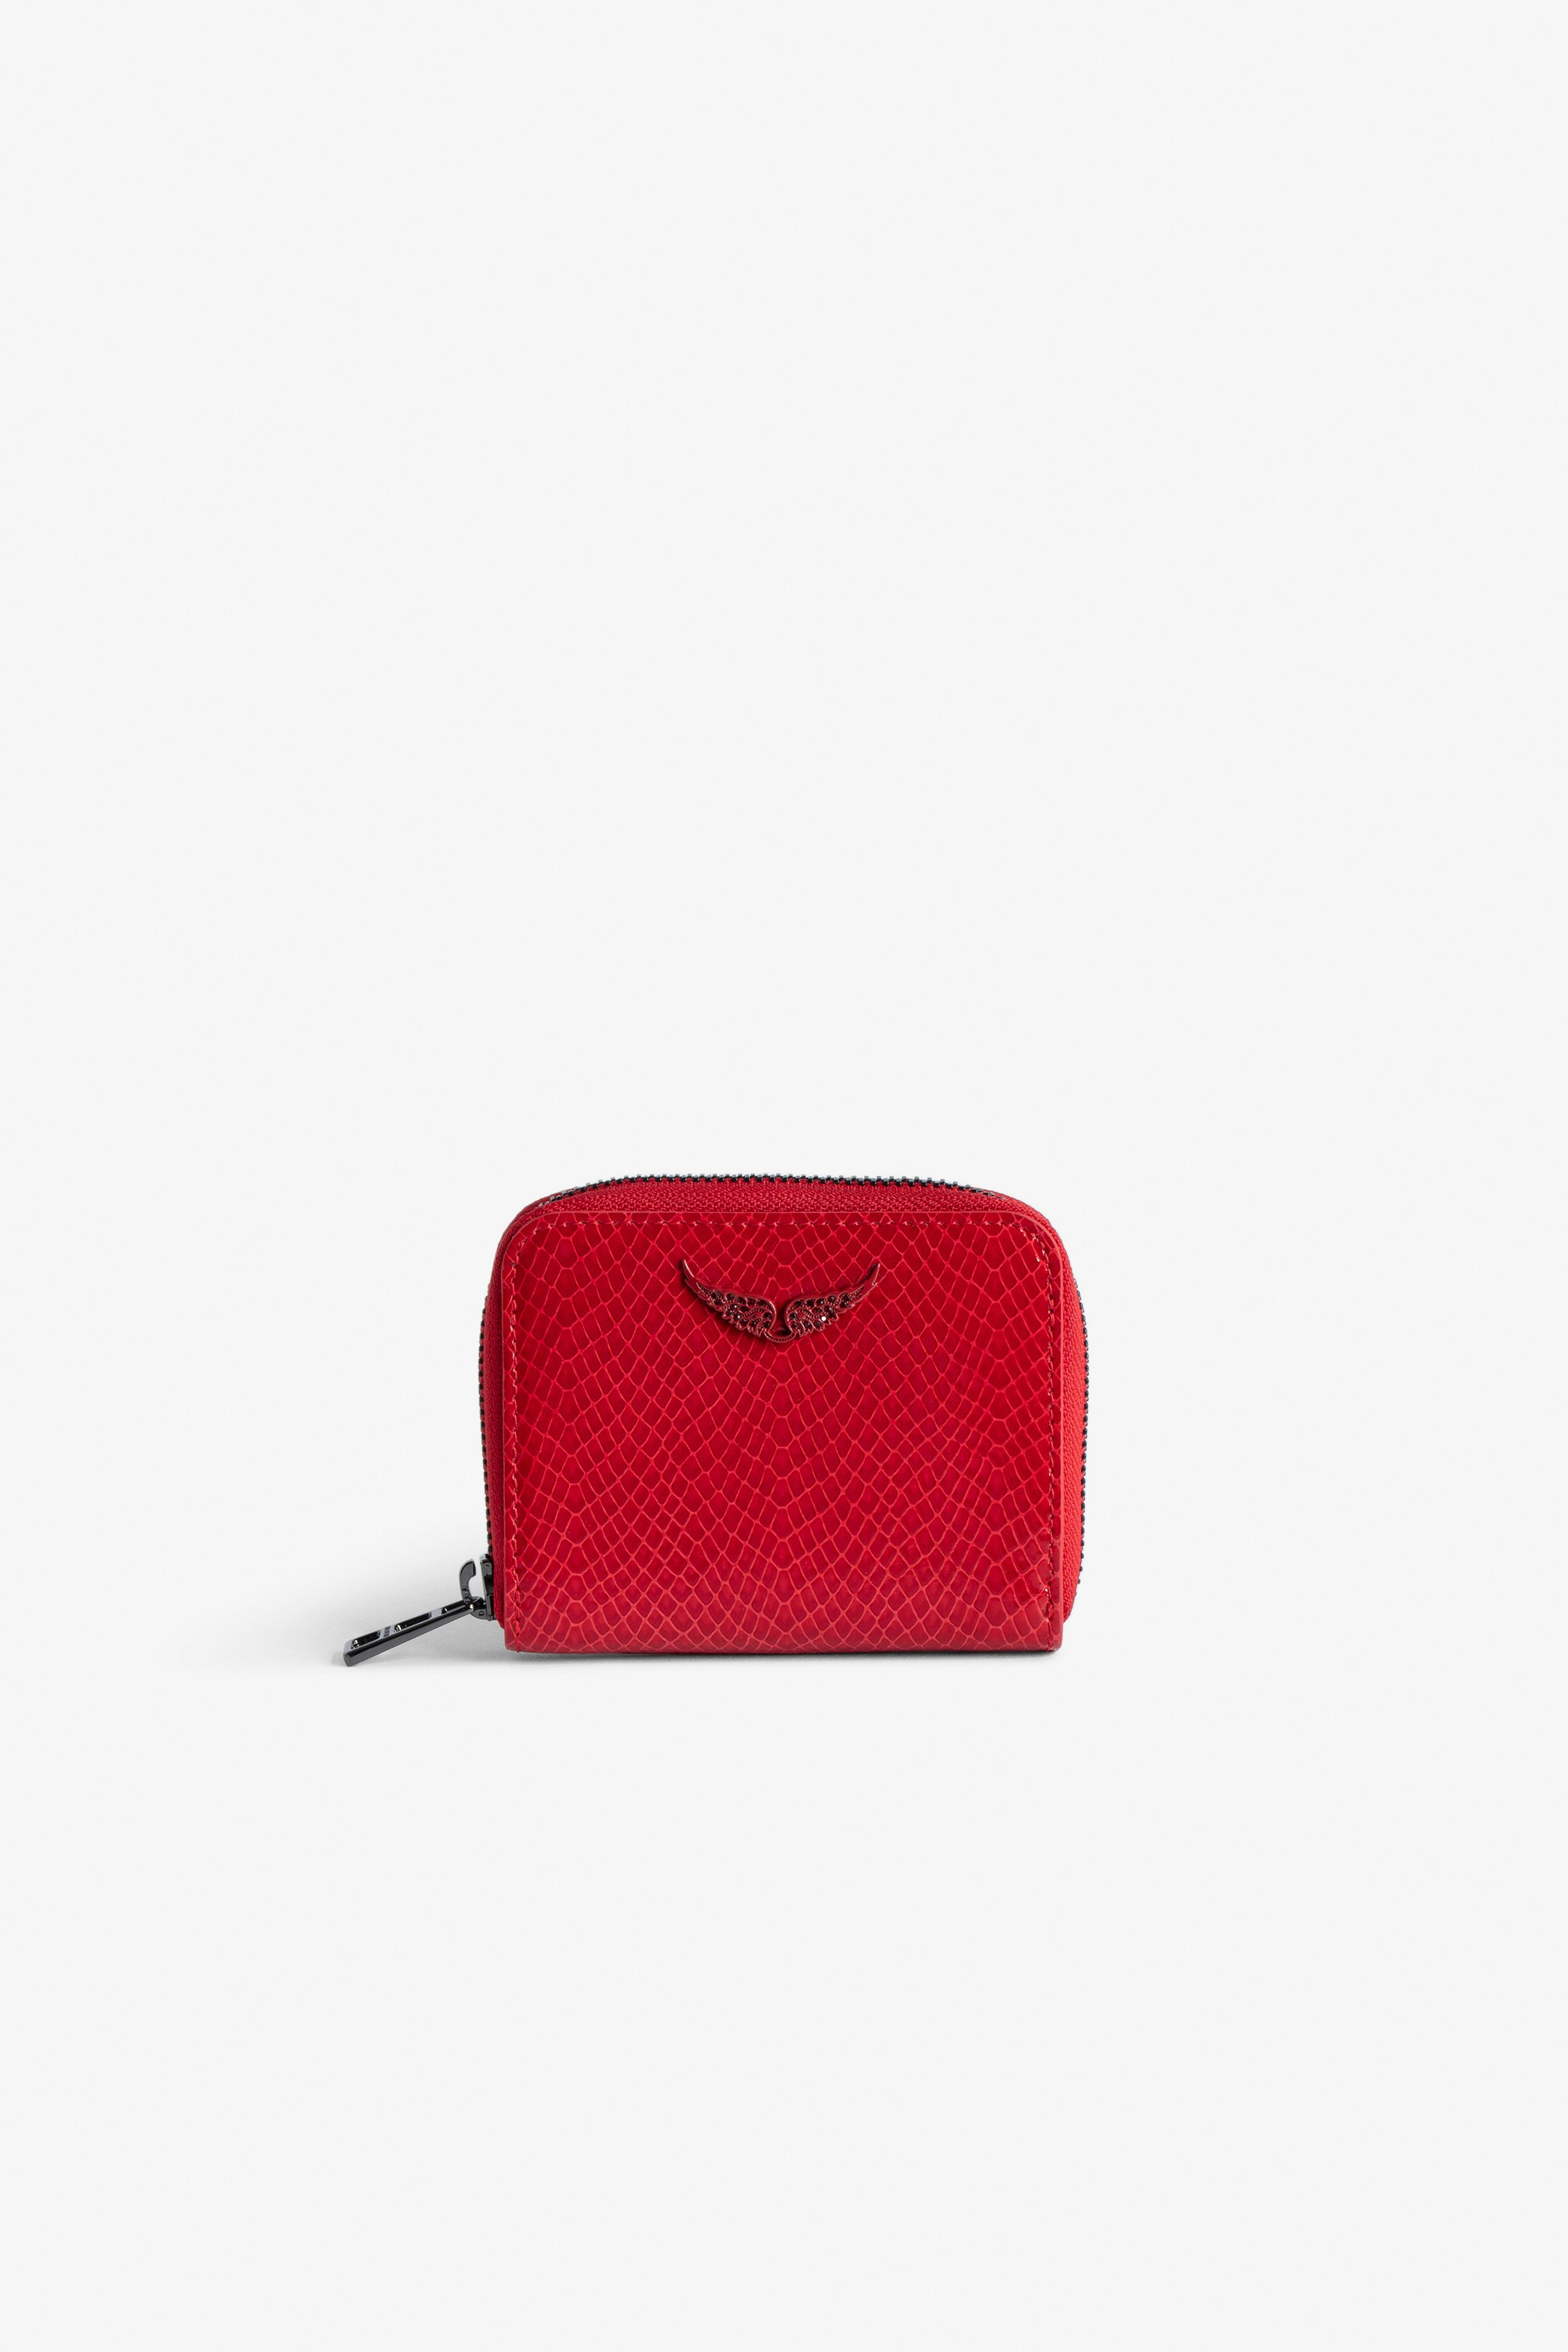 Porte-Monnaie Mini ZV Glossy Wild Embossé - Portefeuille en cuir brillant rouge effet python orné d'un charm ailes à strass.